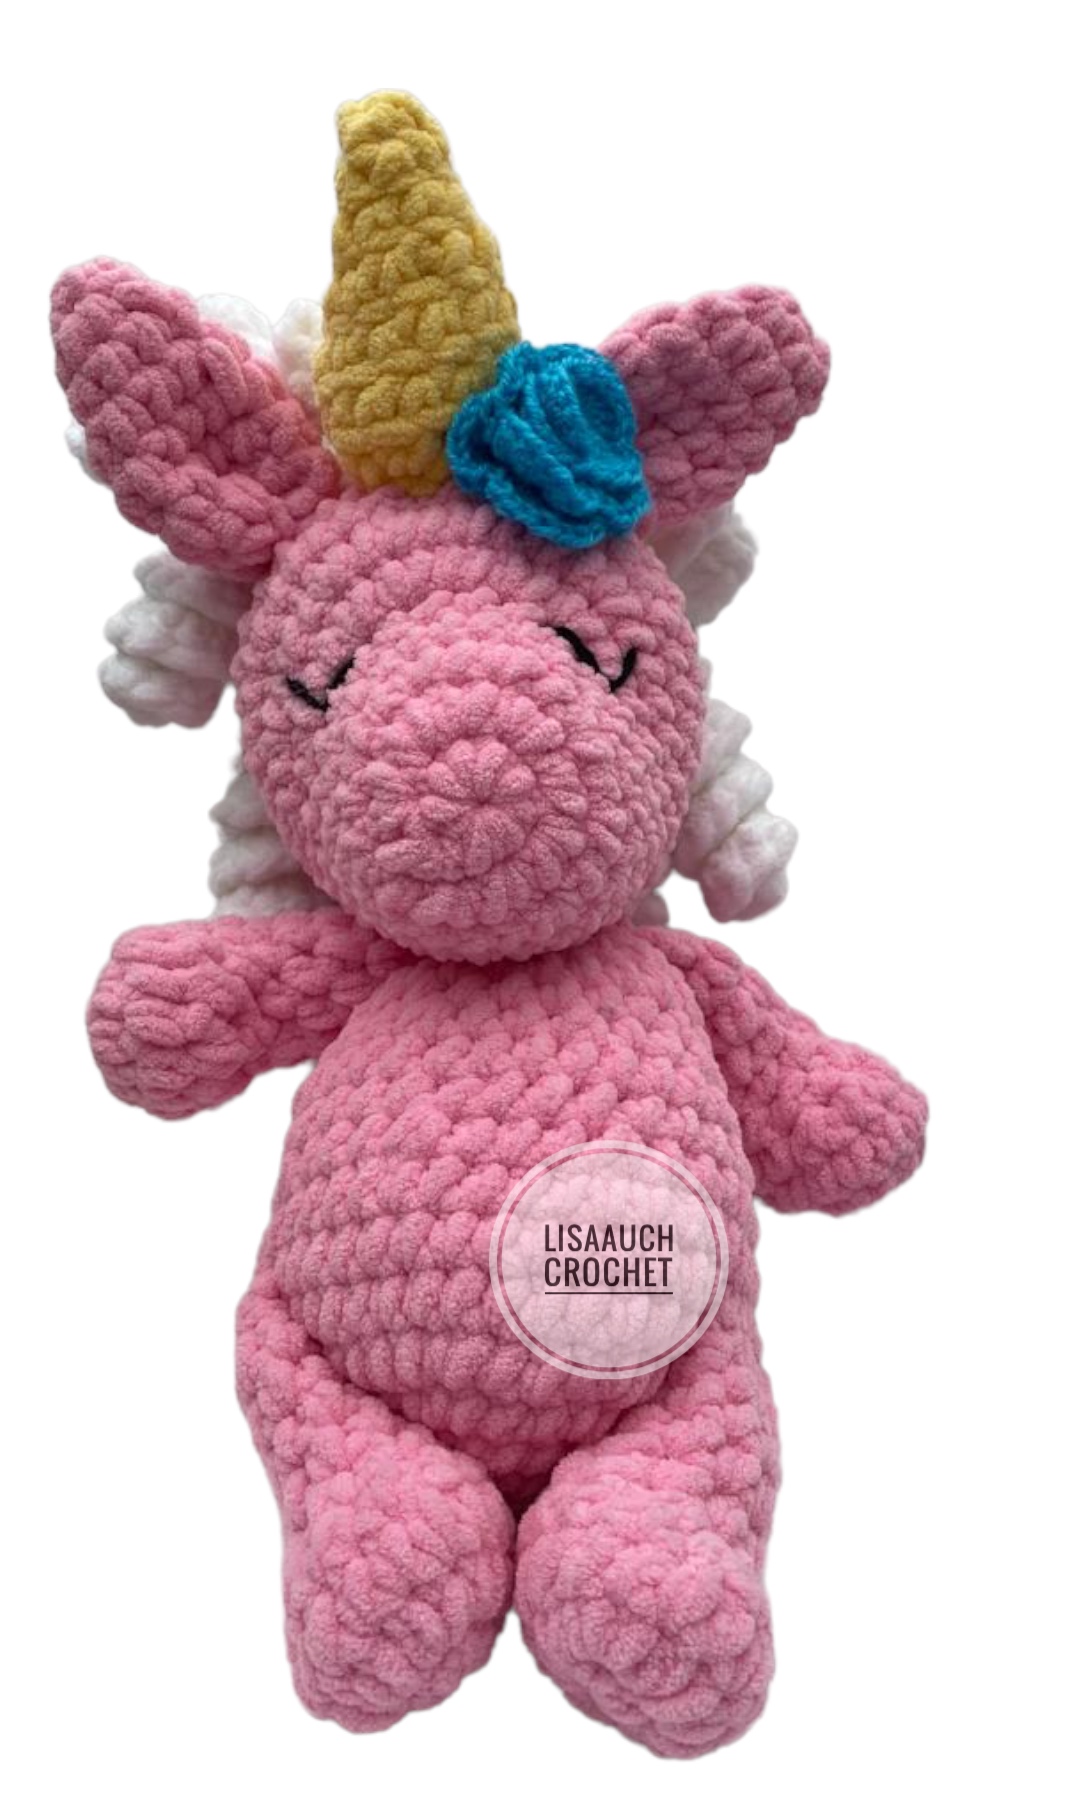 Plush Stuffed Unicorn Amigurumi Crochet Toy Pattern